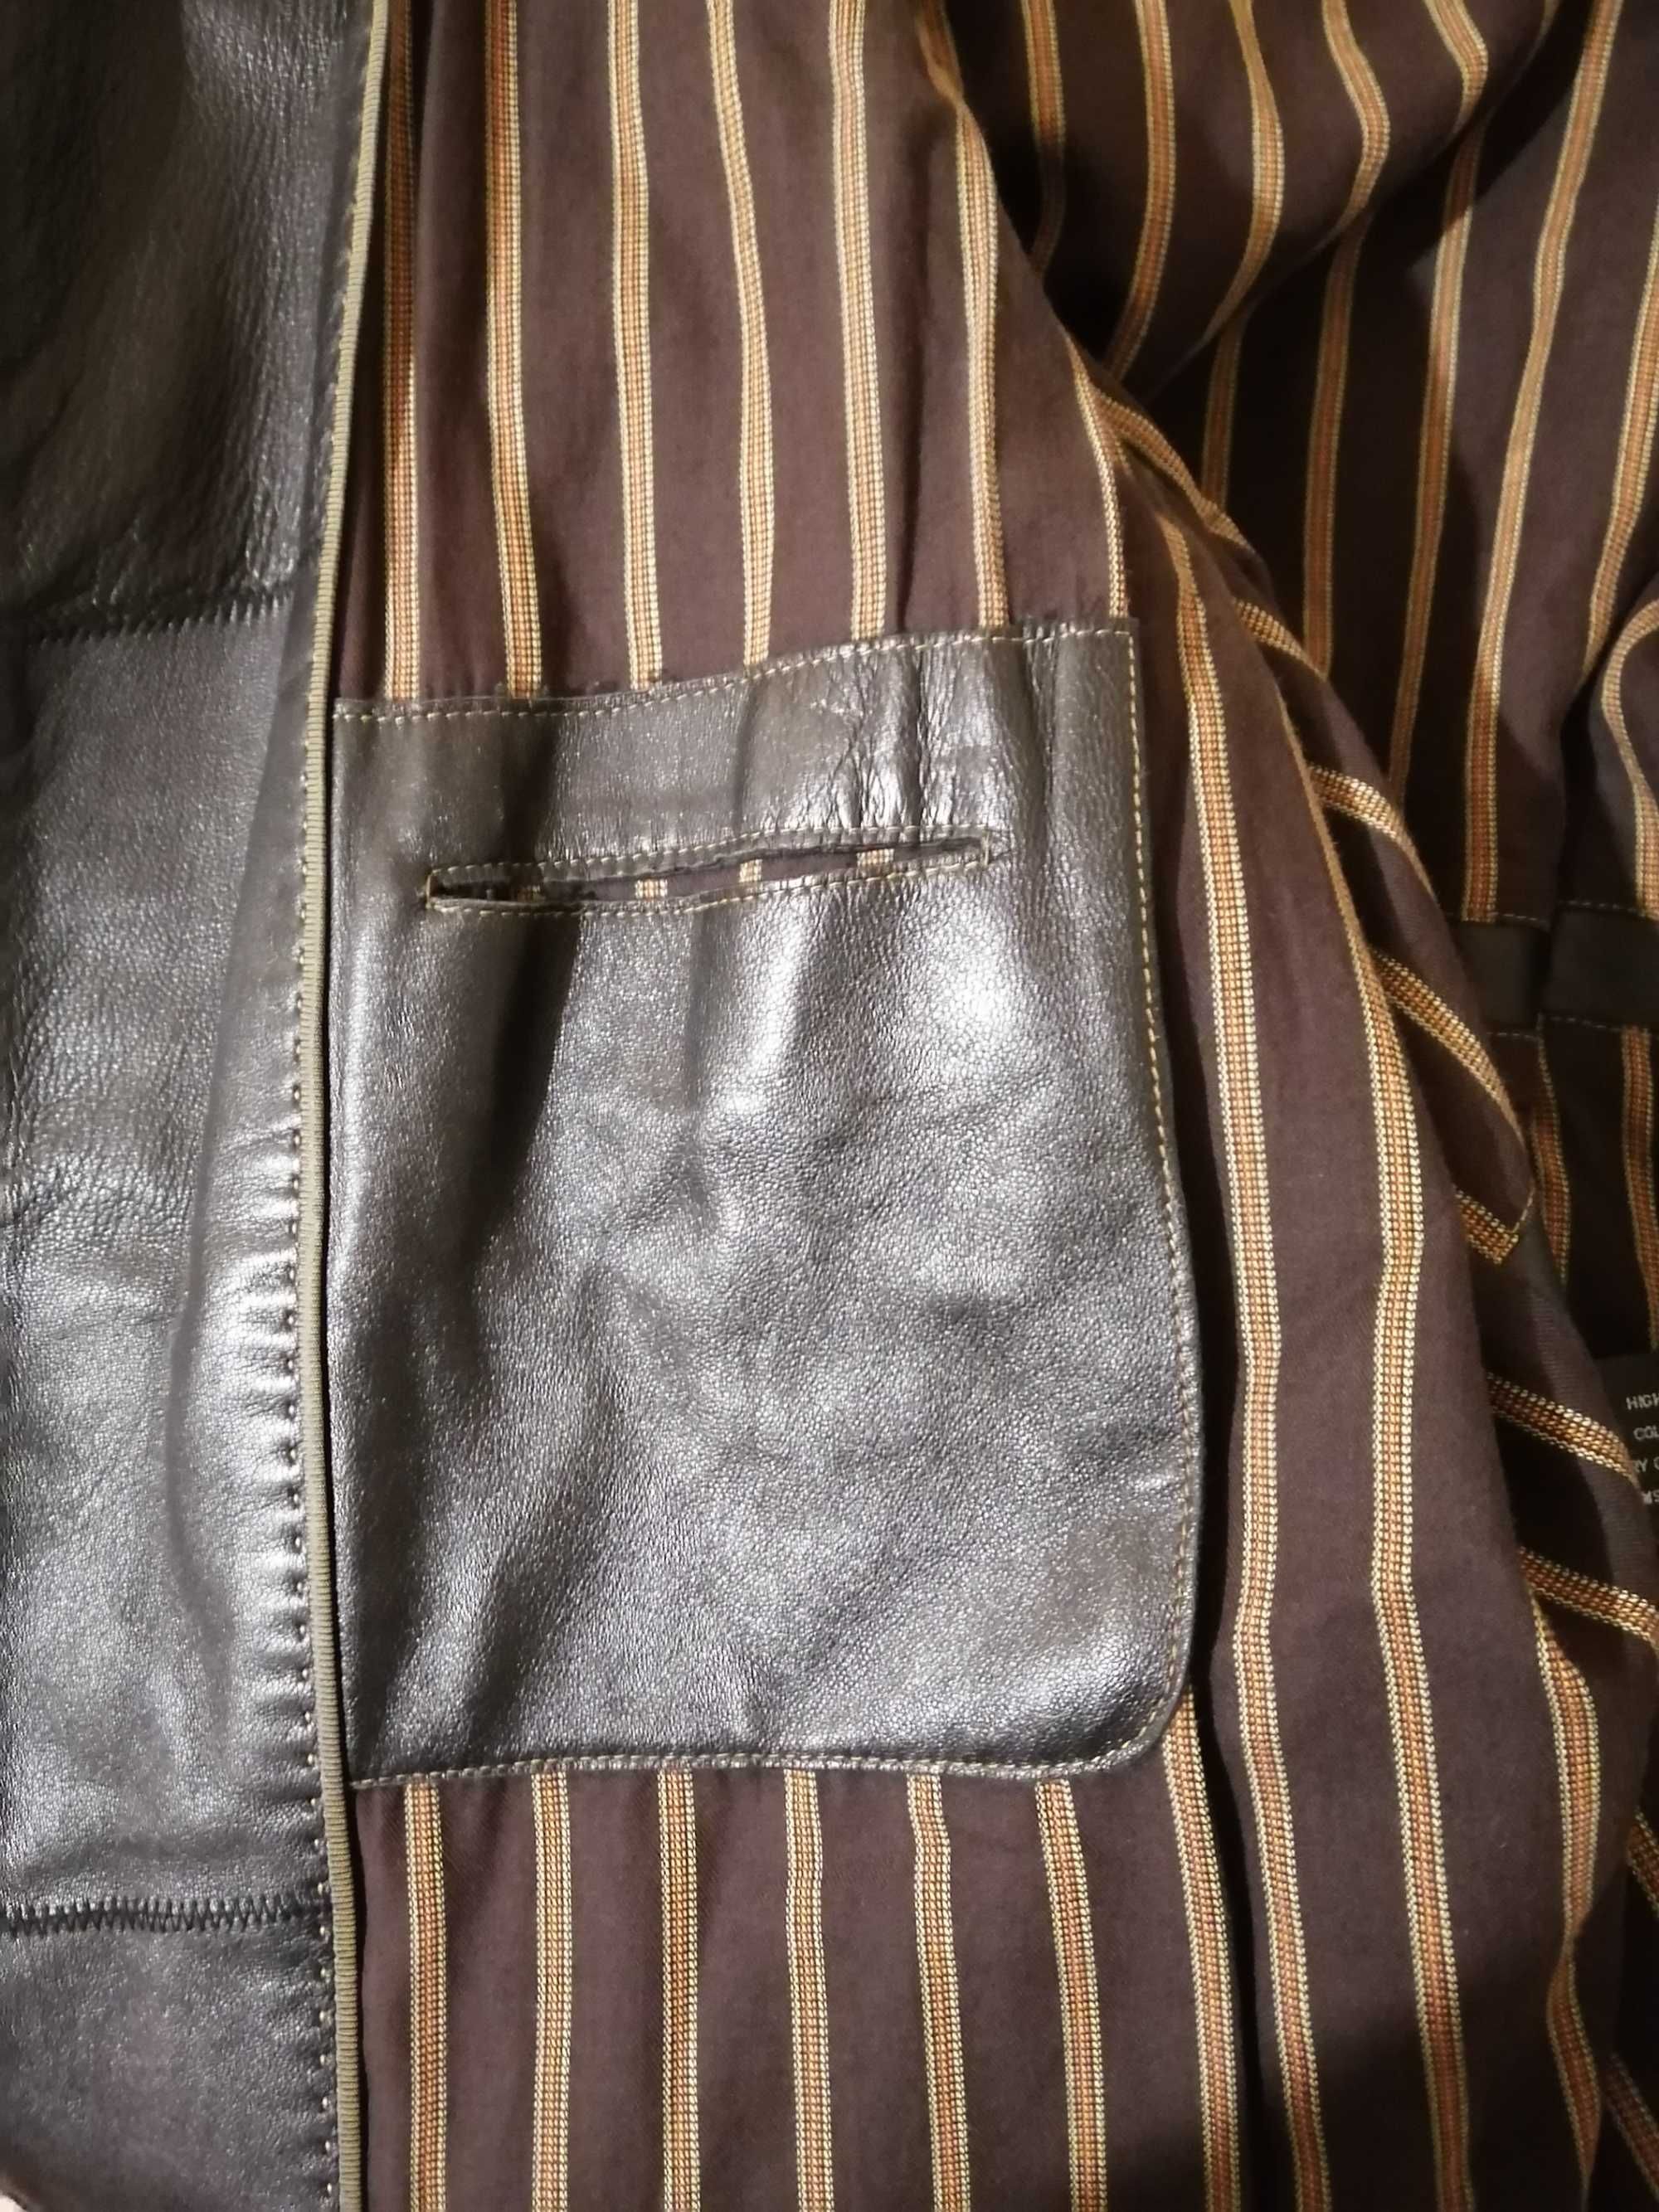 Кожаная куртка HELMSMAN (Германия, оригинал), кожа и фасон супер, разм